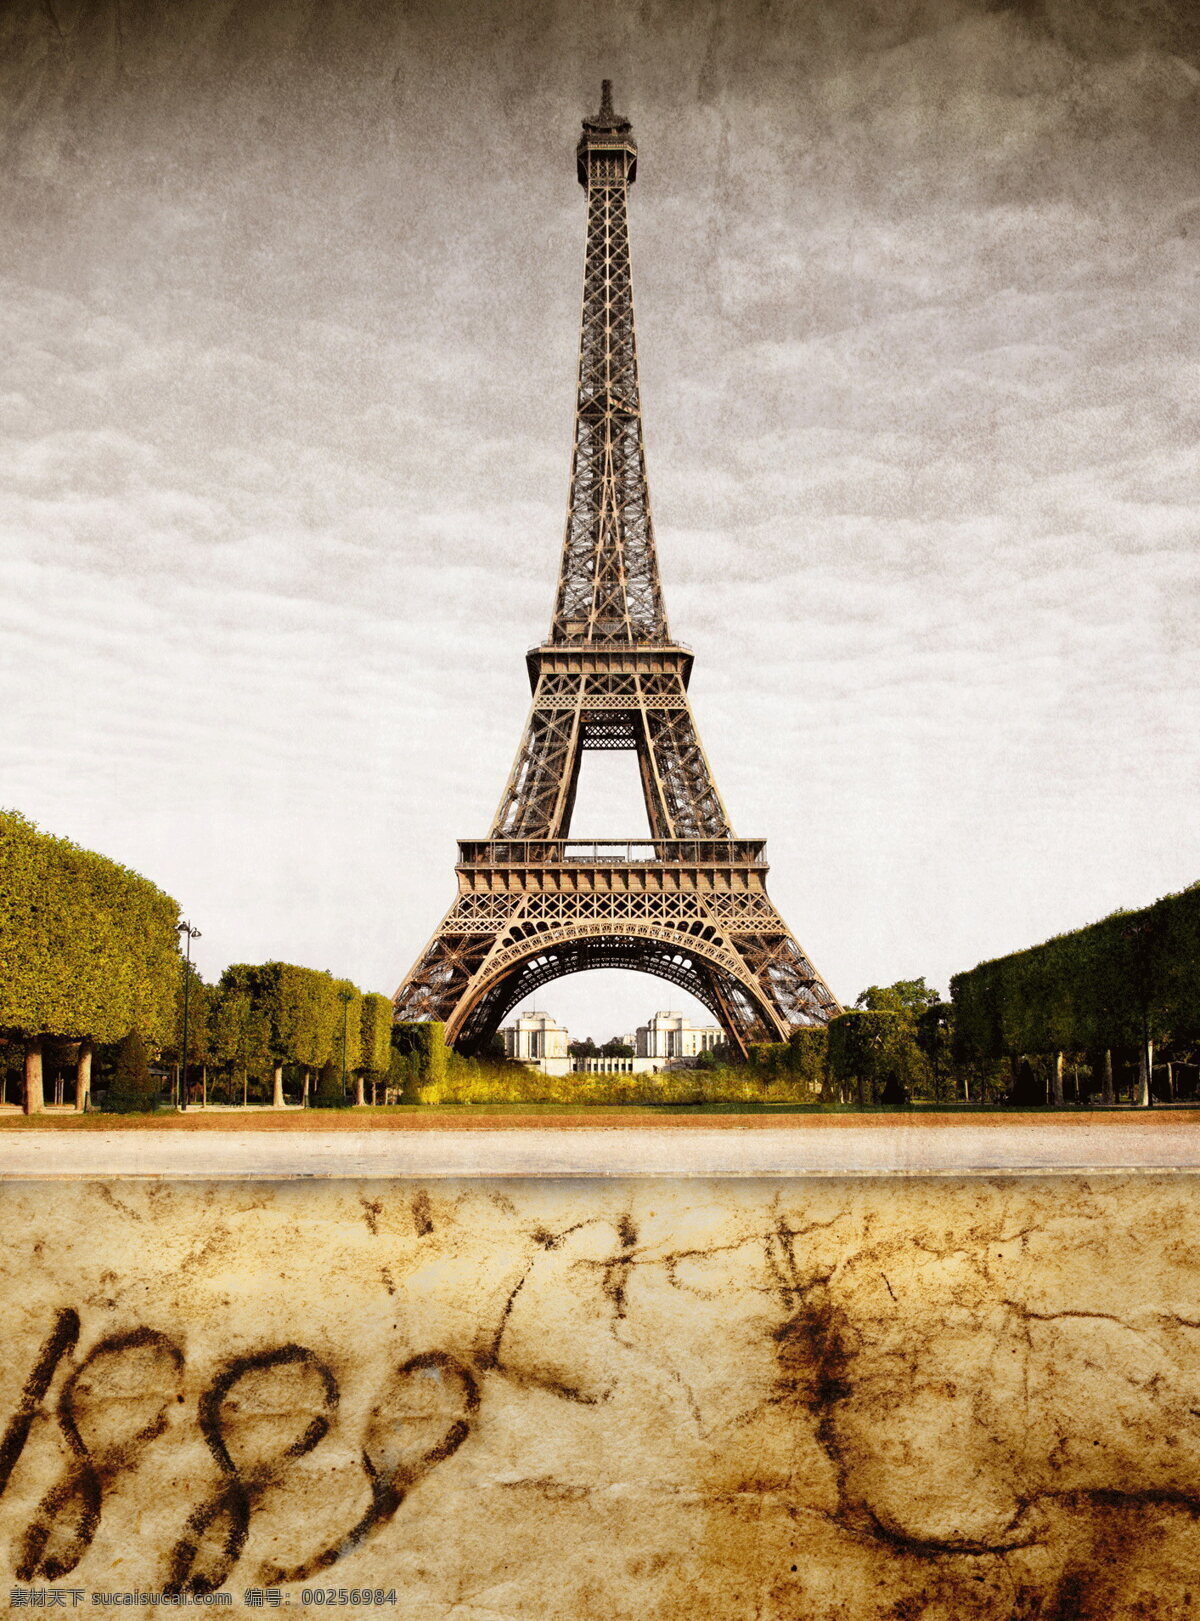 怀旧 风格 埃菲尔铁塔 怀旧风格 巴黎铁塔 铁塔 法国 巴黎建筑 古建筑 建筑物 特色建筑 城市建筑 建筑风景 欧洲风景 欧洲人文 巴黎 自然景观 建筑景观